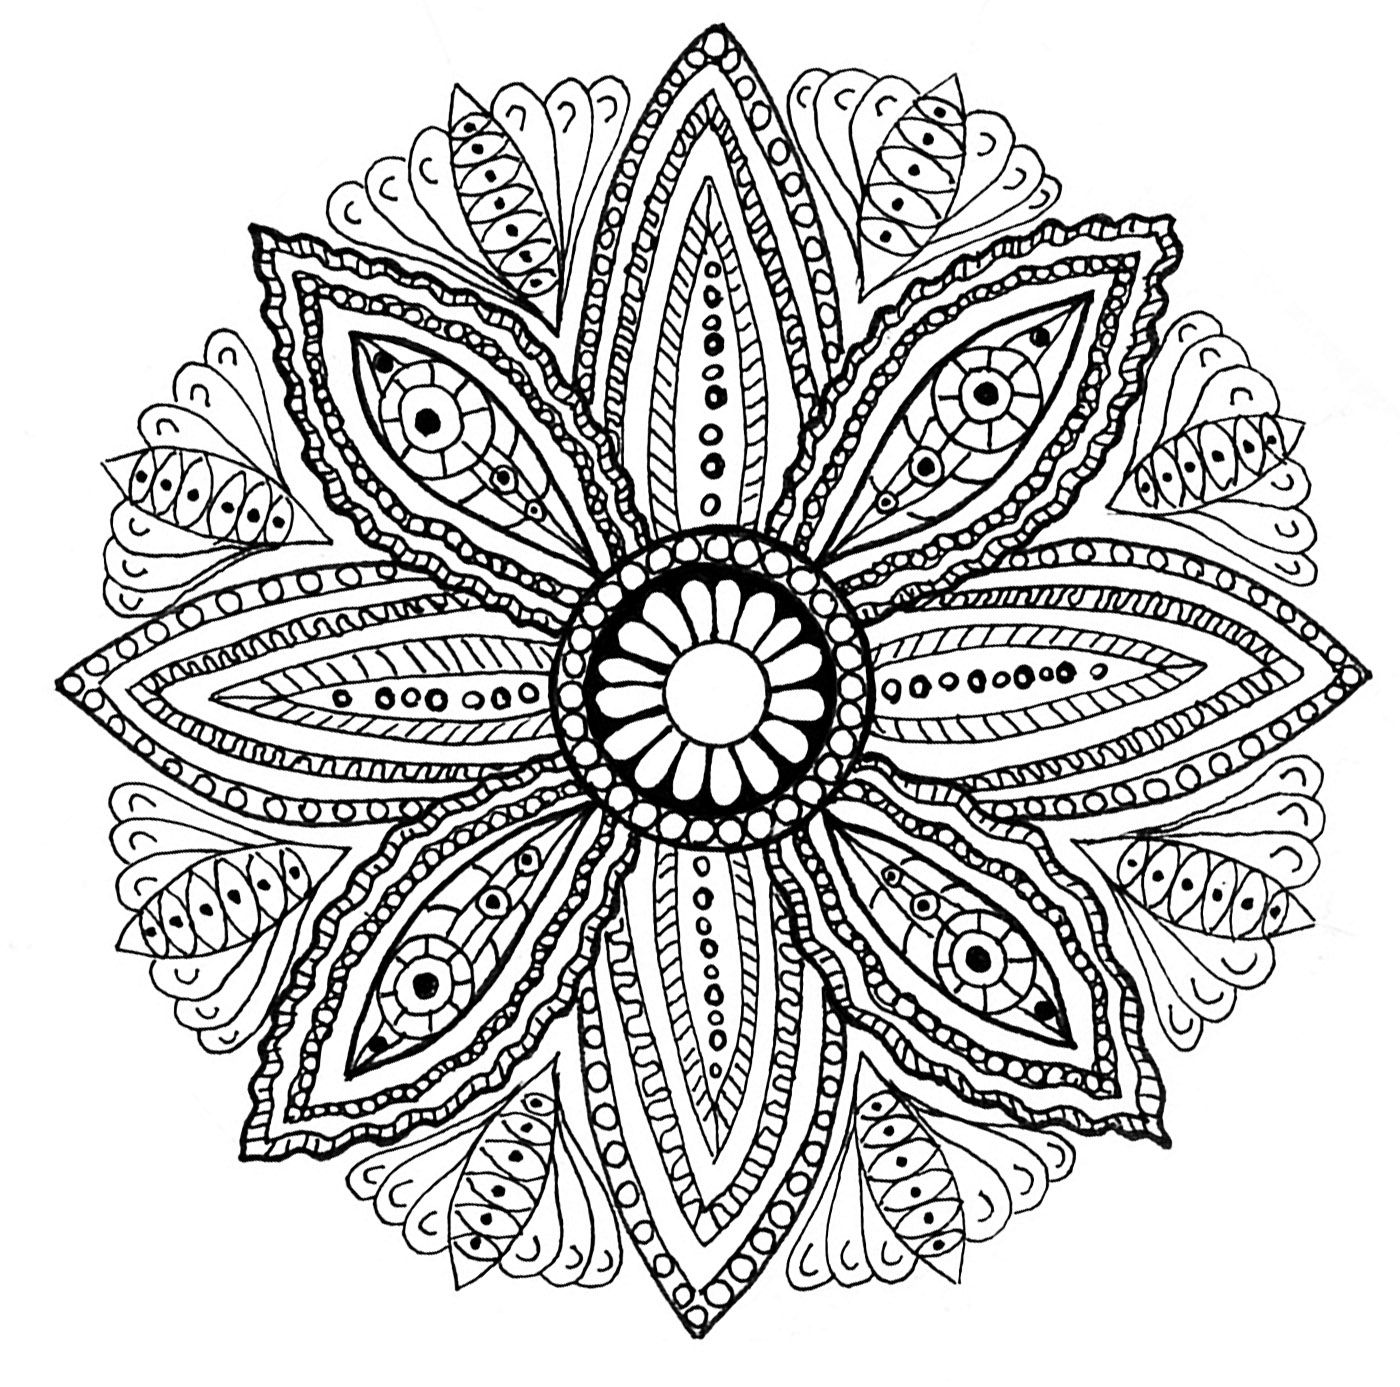 Desenhos para colorir de Mandalas para imprimir